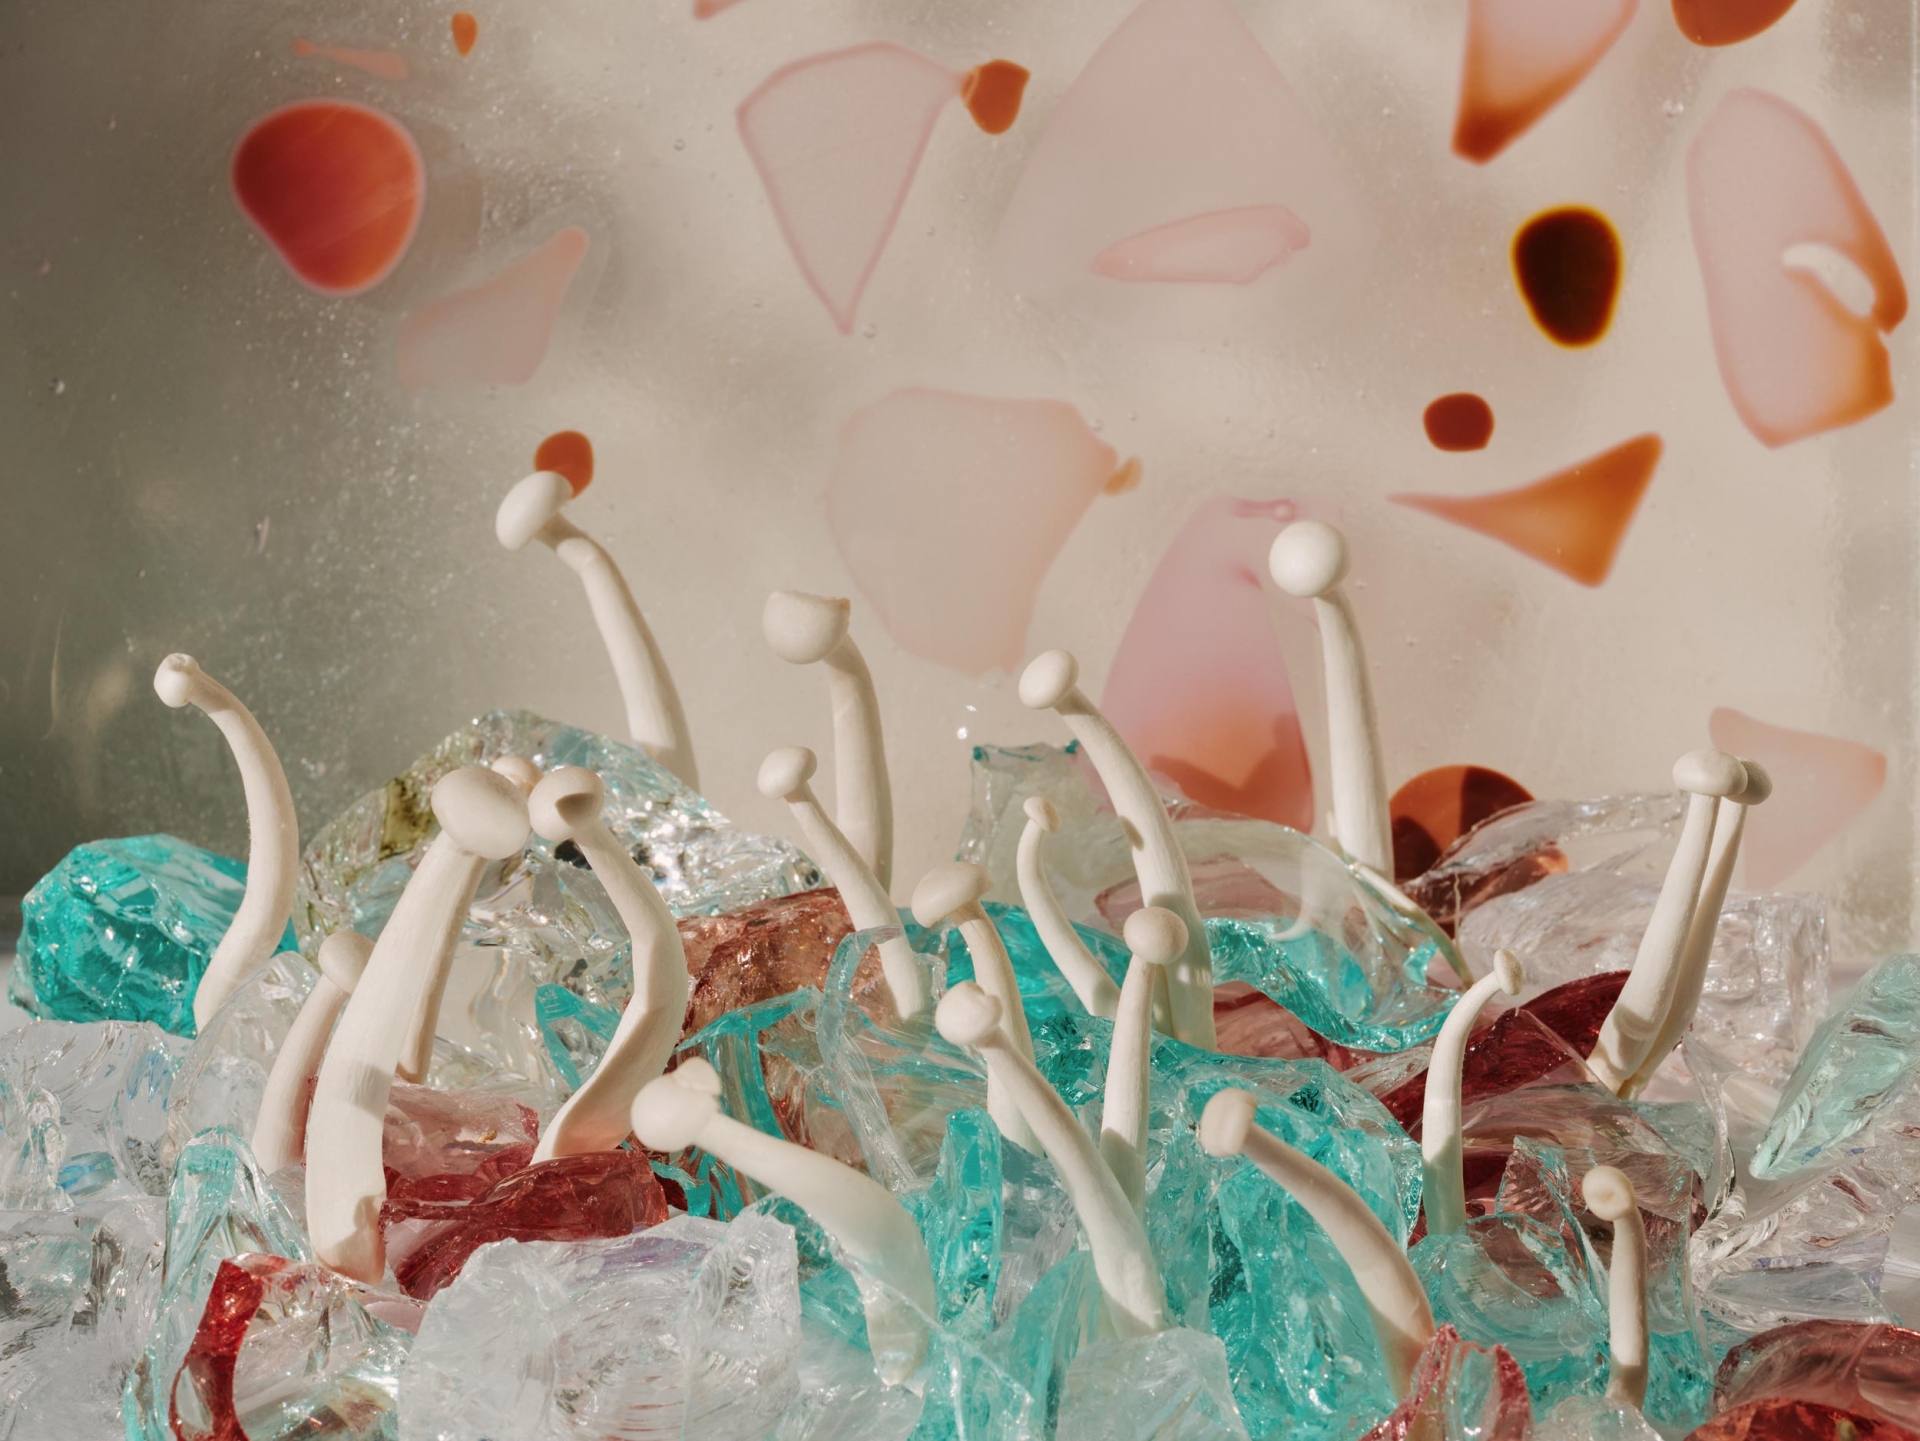 Moravská galerie a Designblok vysílají do Milána nejlepší české designéry skla, porcelánu a keramiky ve velkolepé výstavě Made by Fire v prostorách Triennale Milano